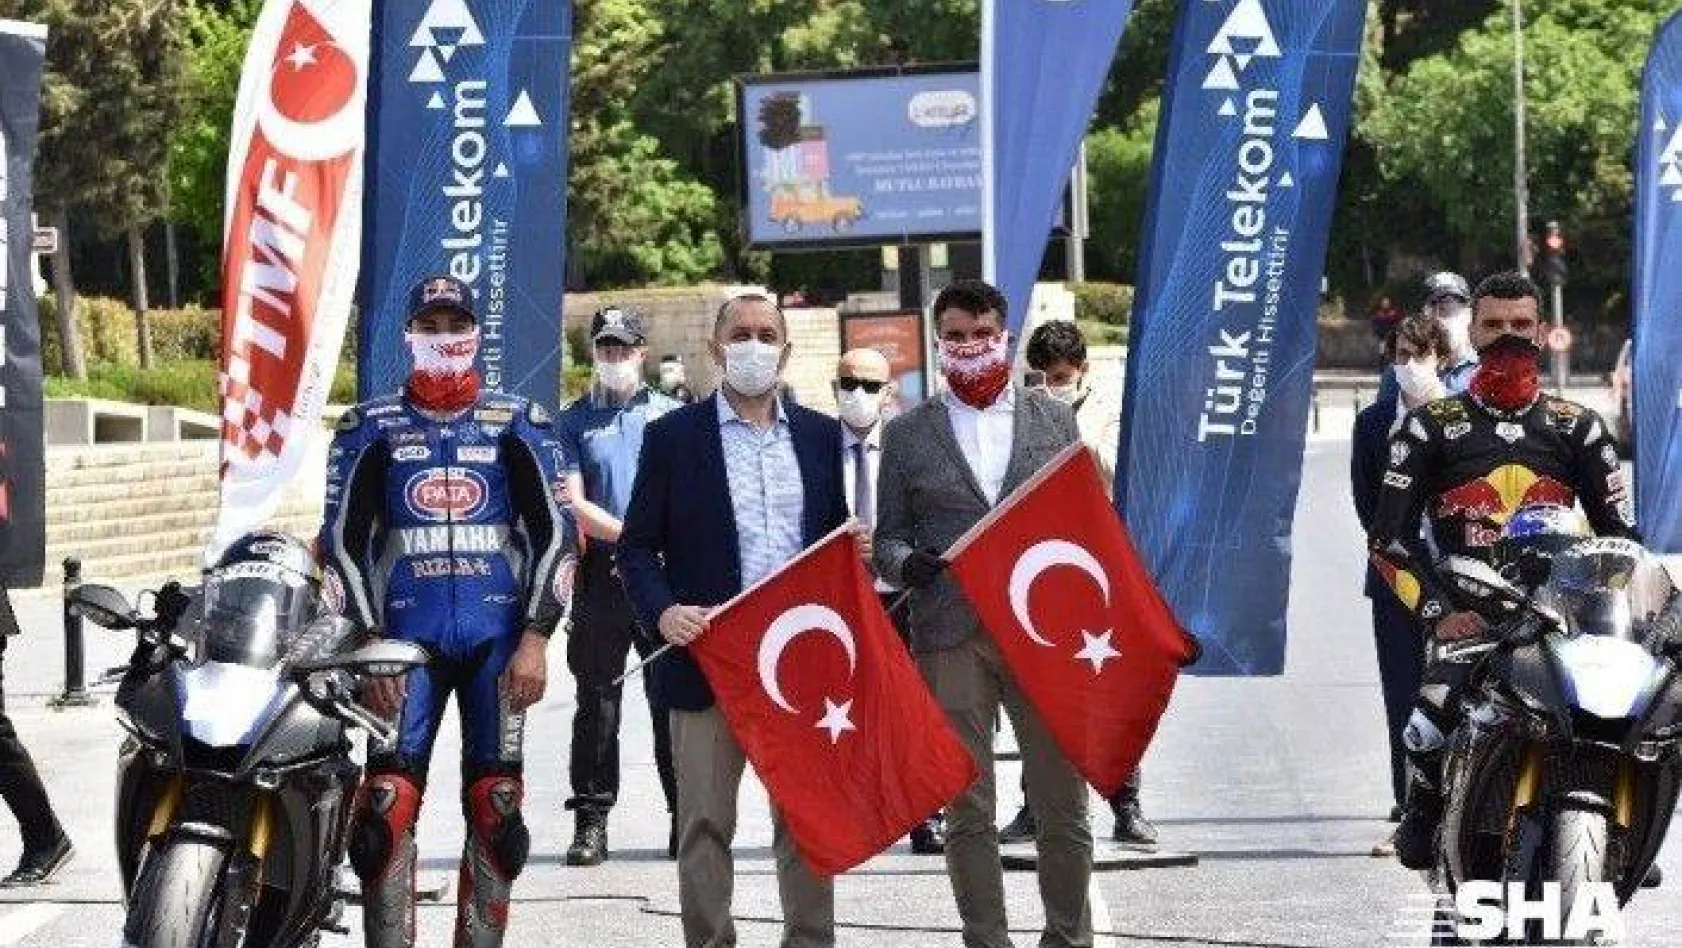 19 Mayıs Atatürk Rallisi gerçekleşti